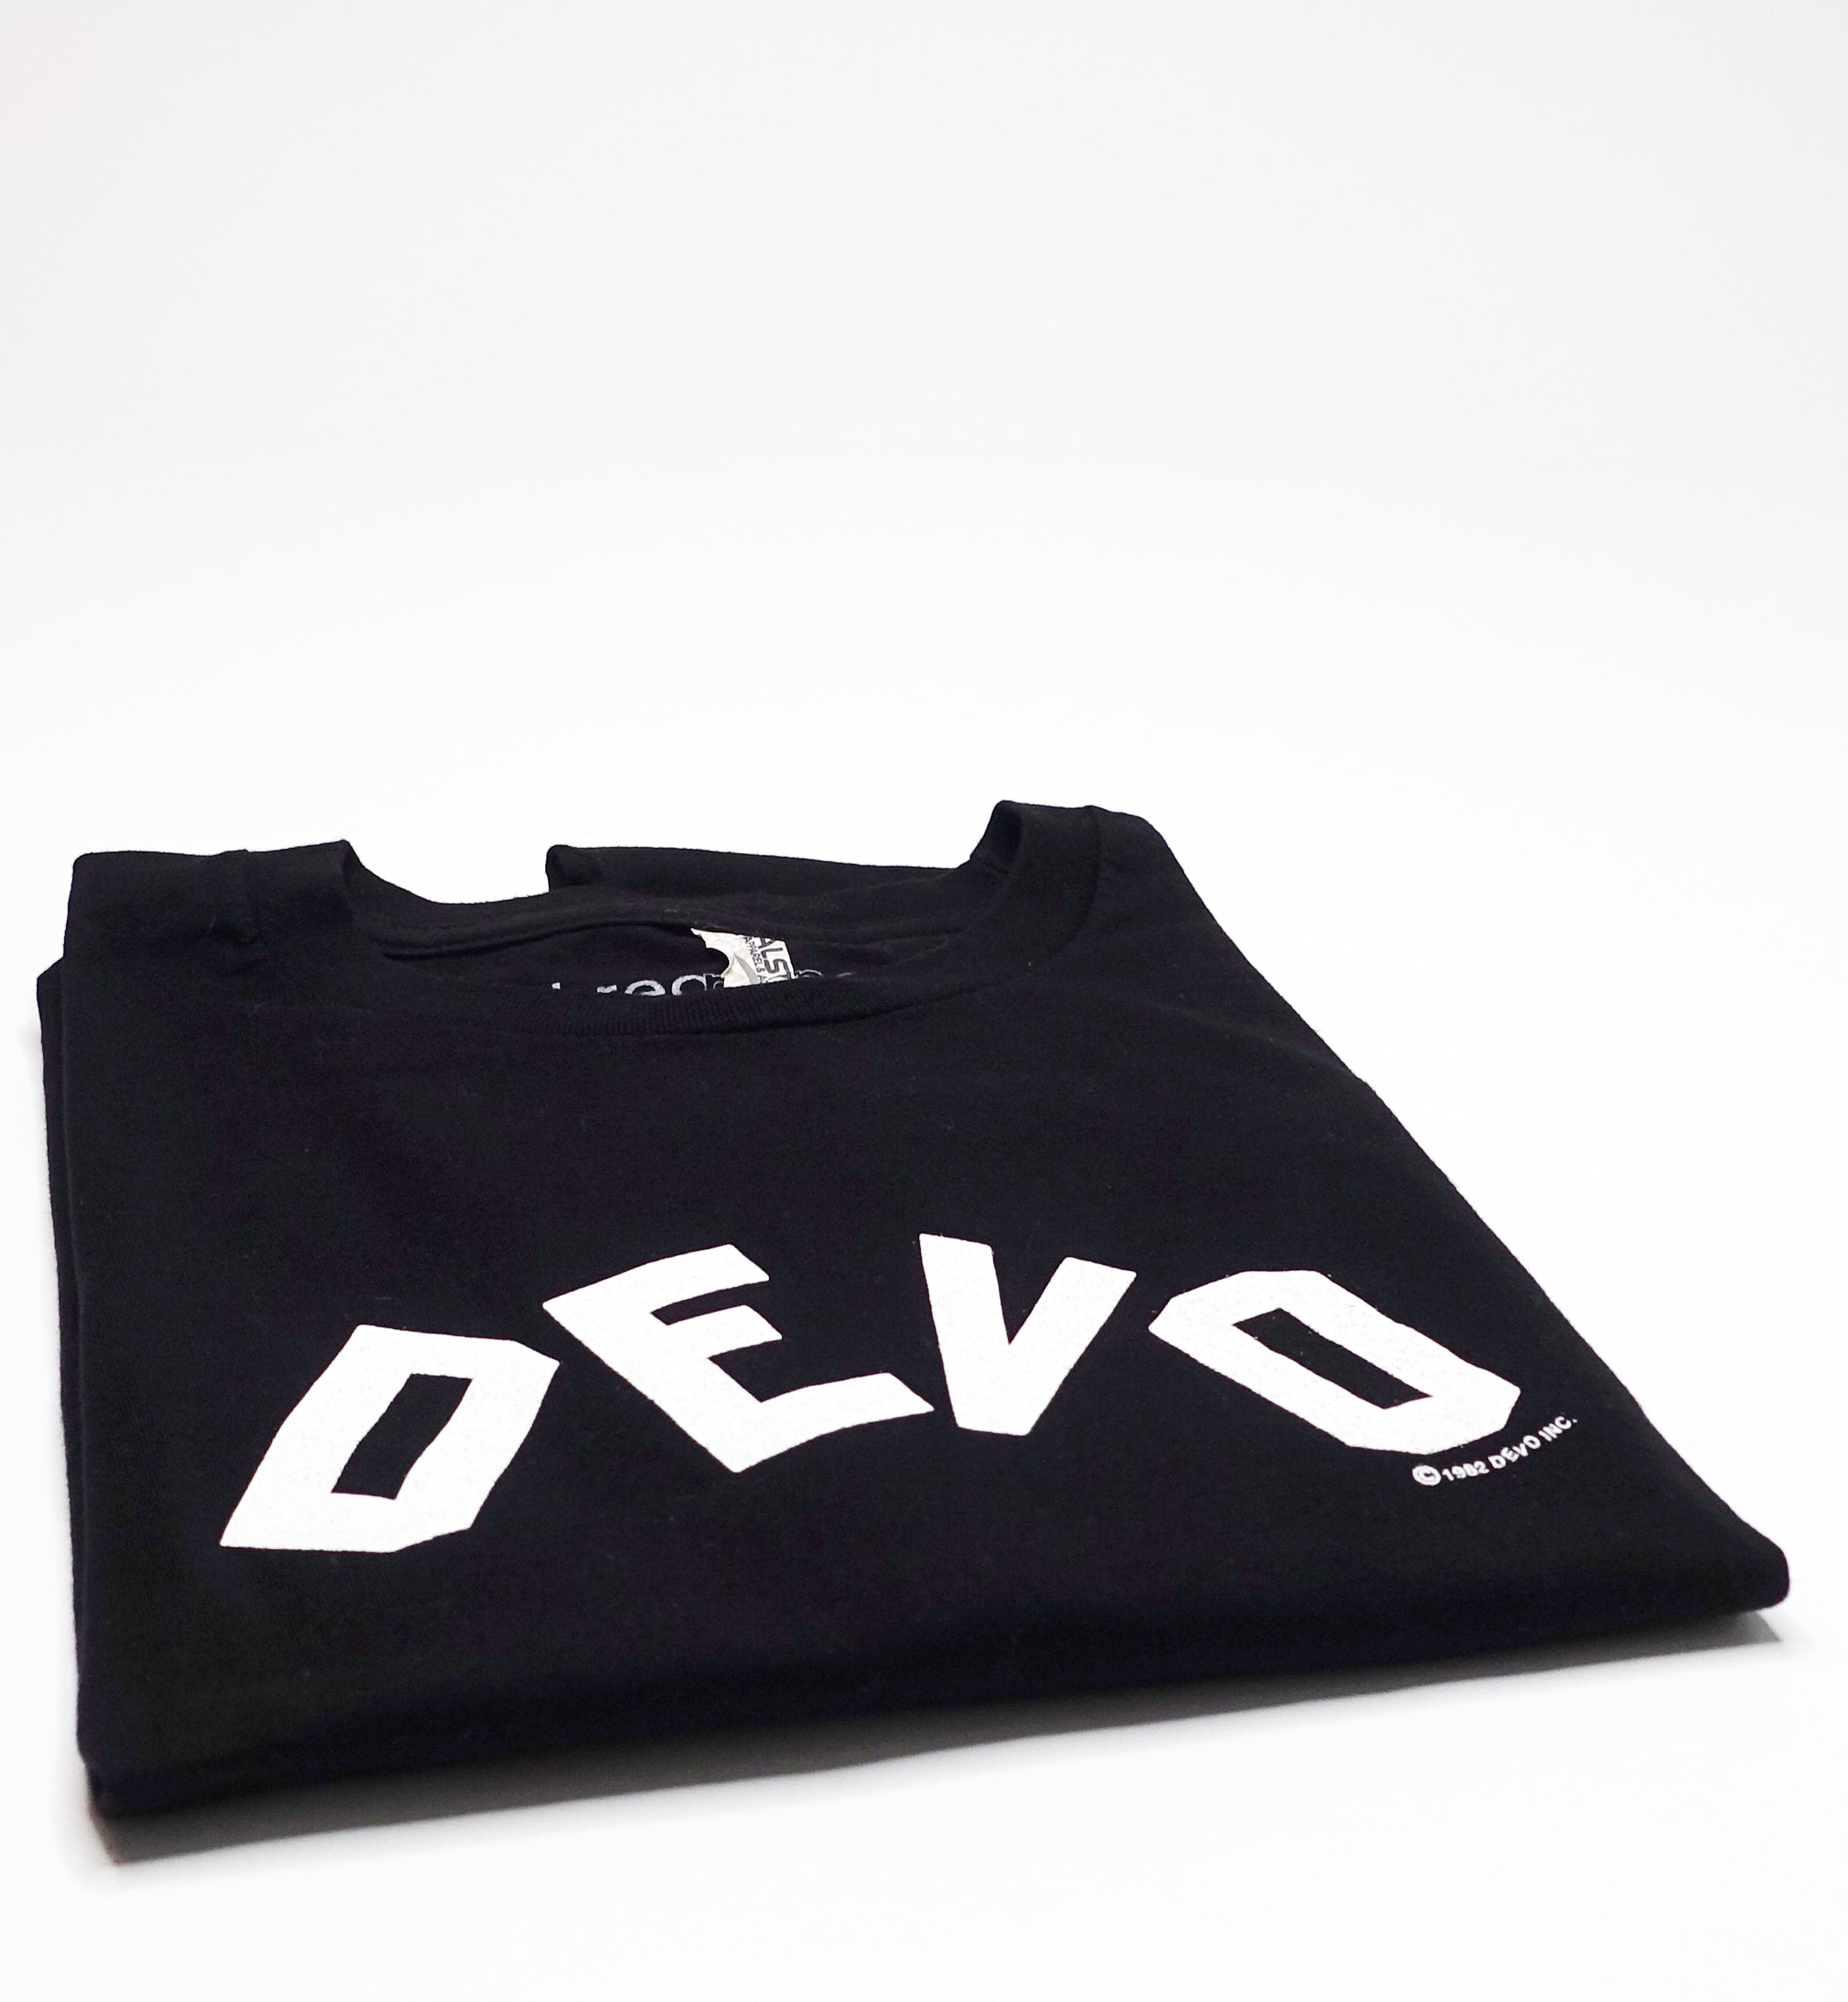 Devo – Oh No! It's Devo 1982 Tour (Bootleg by Me) Shirt Size Large